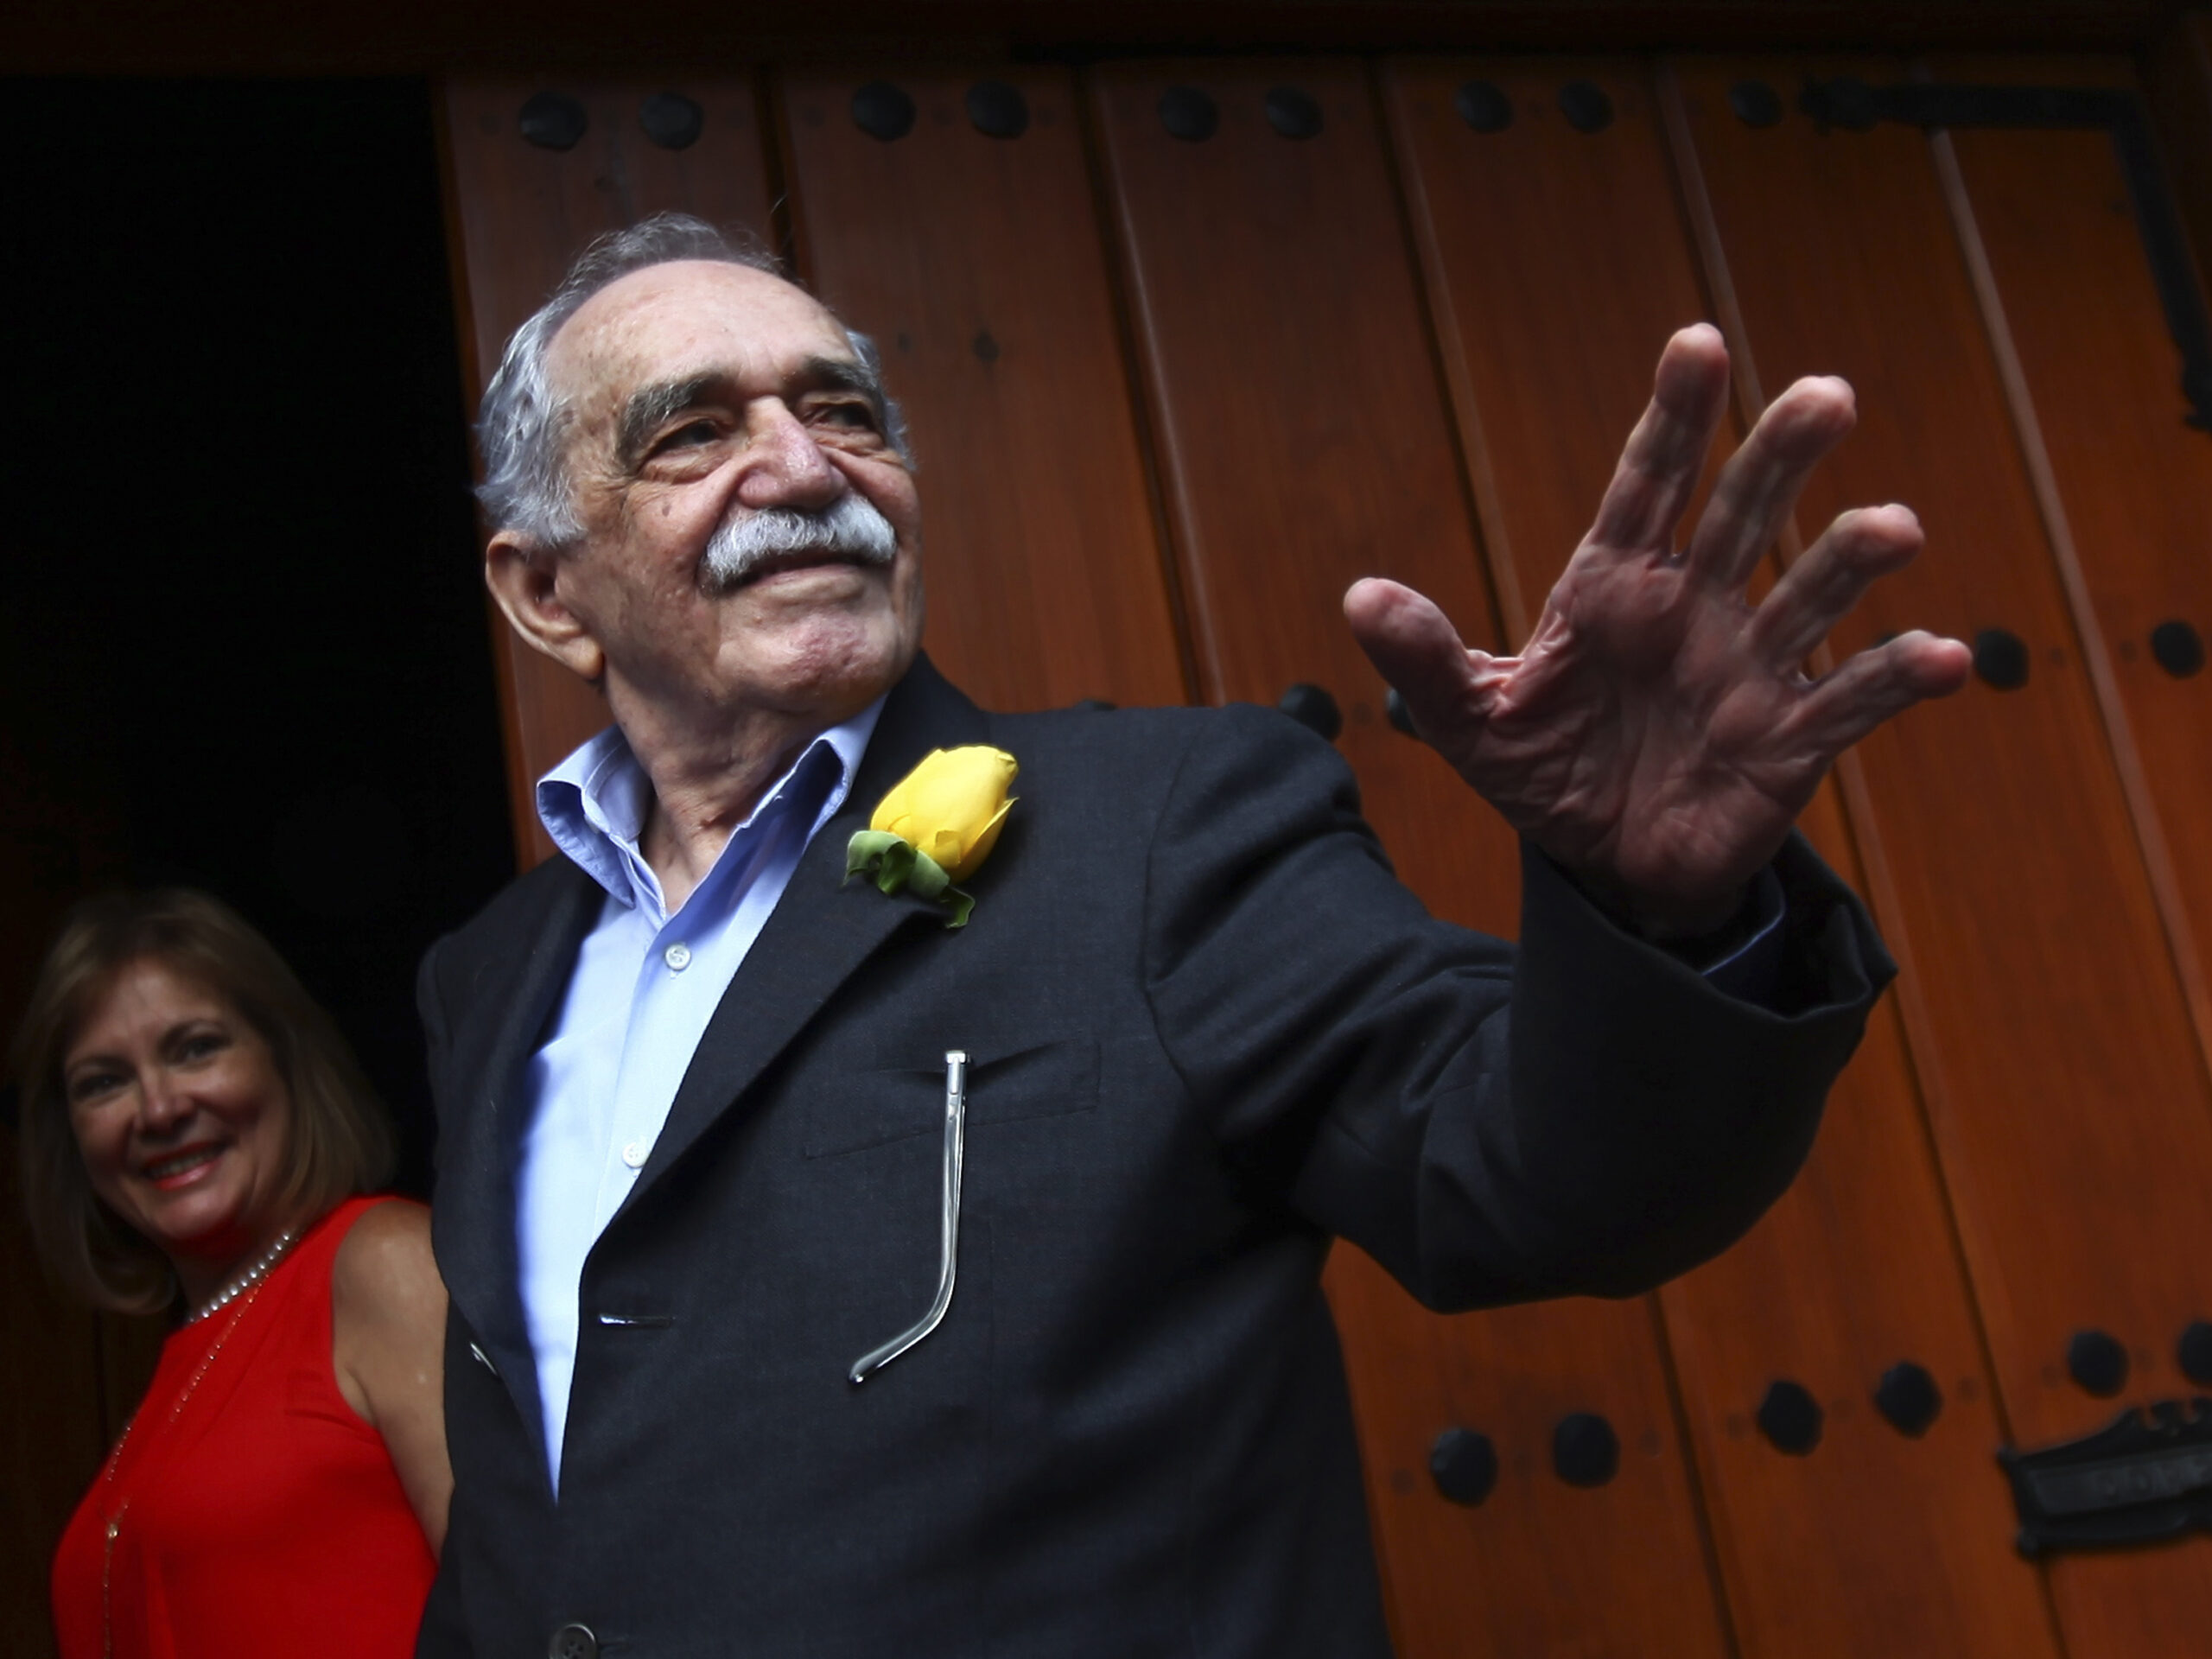 Gabriel García Márquez’s last novel is published against his wishes